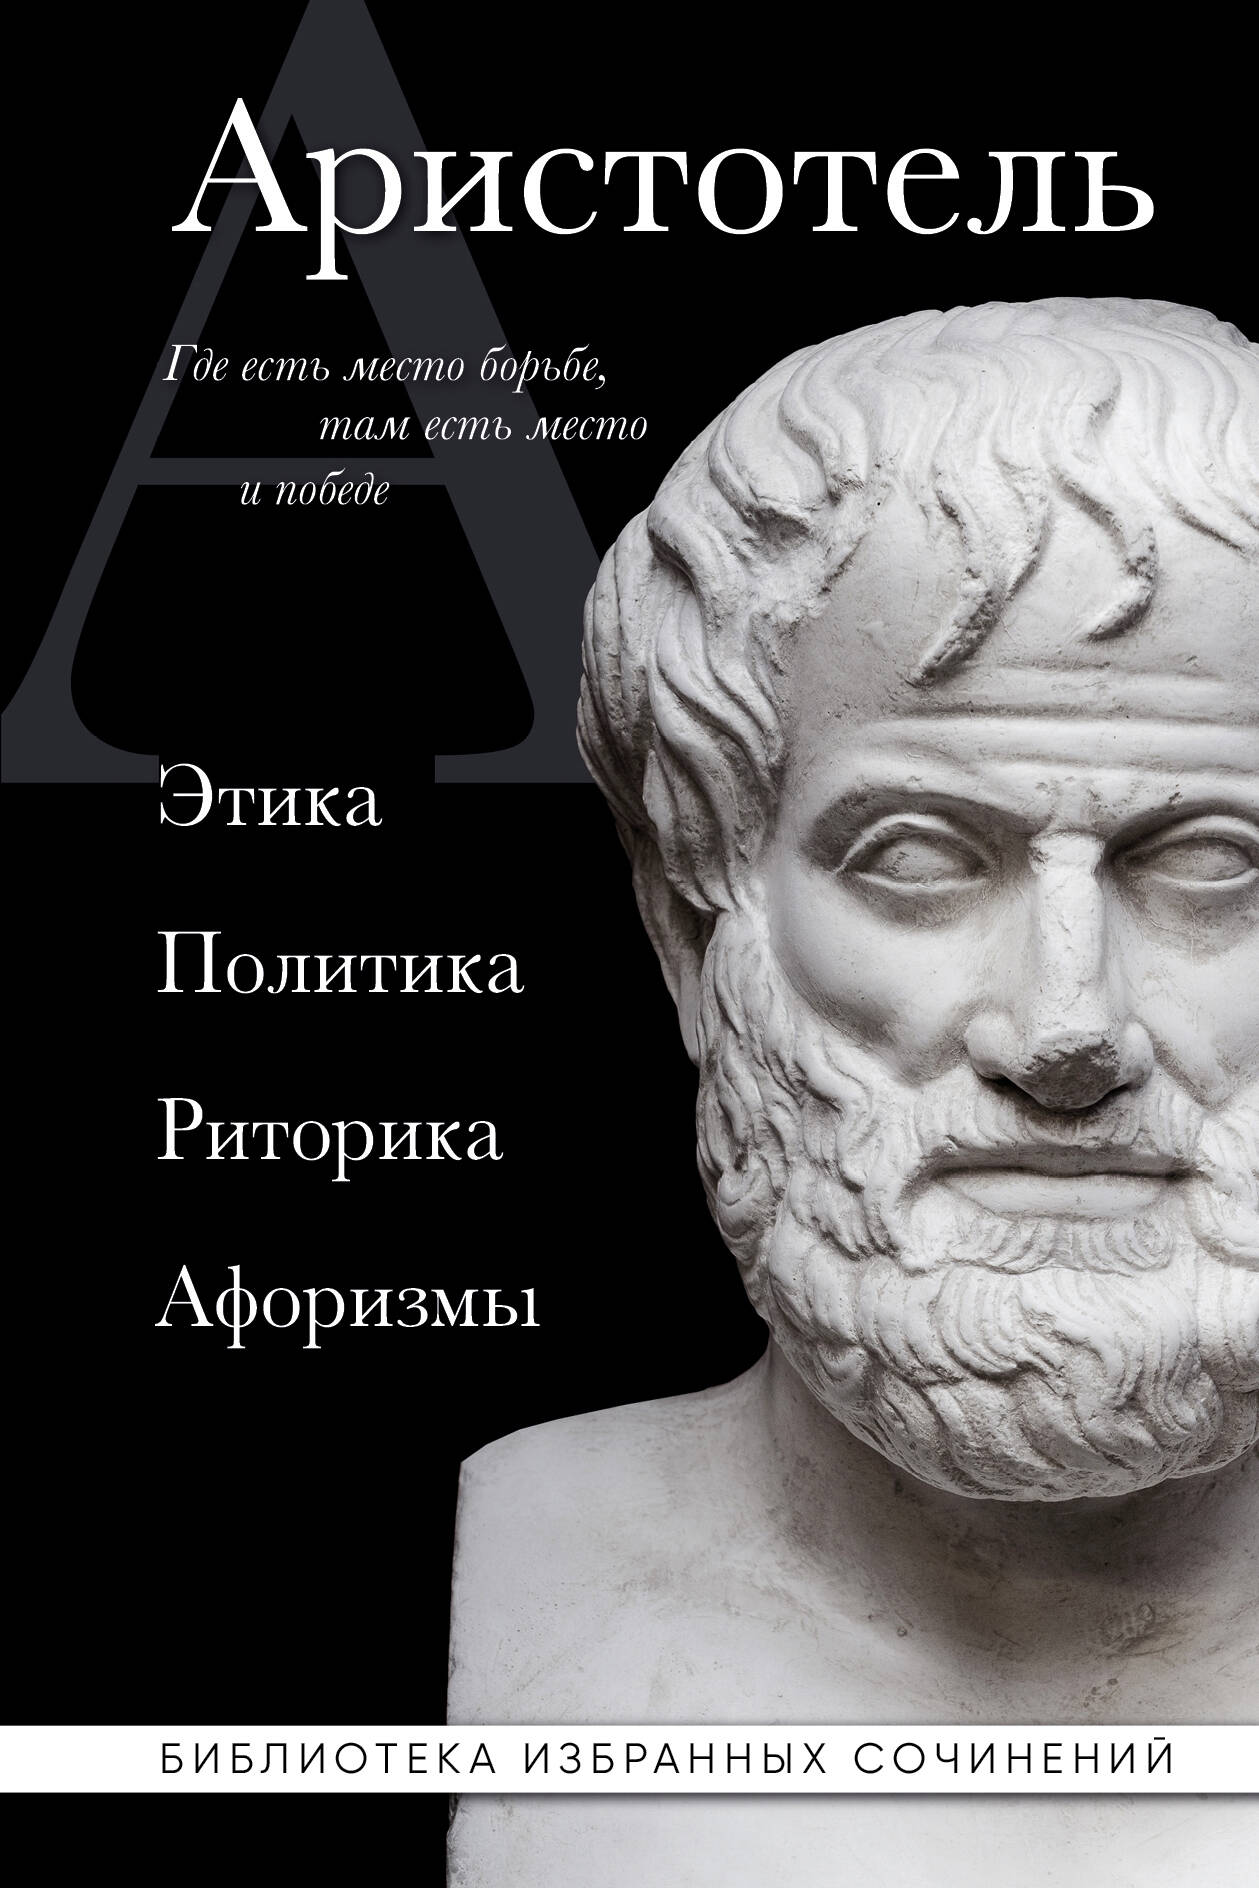  книга Аристотель. Этика, политика, риторика, афоризмы (черная обложка)